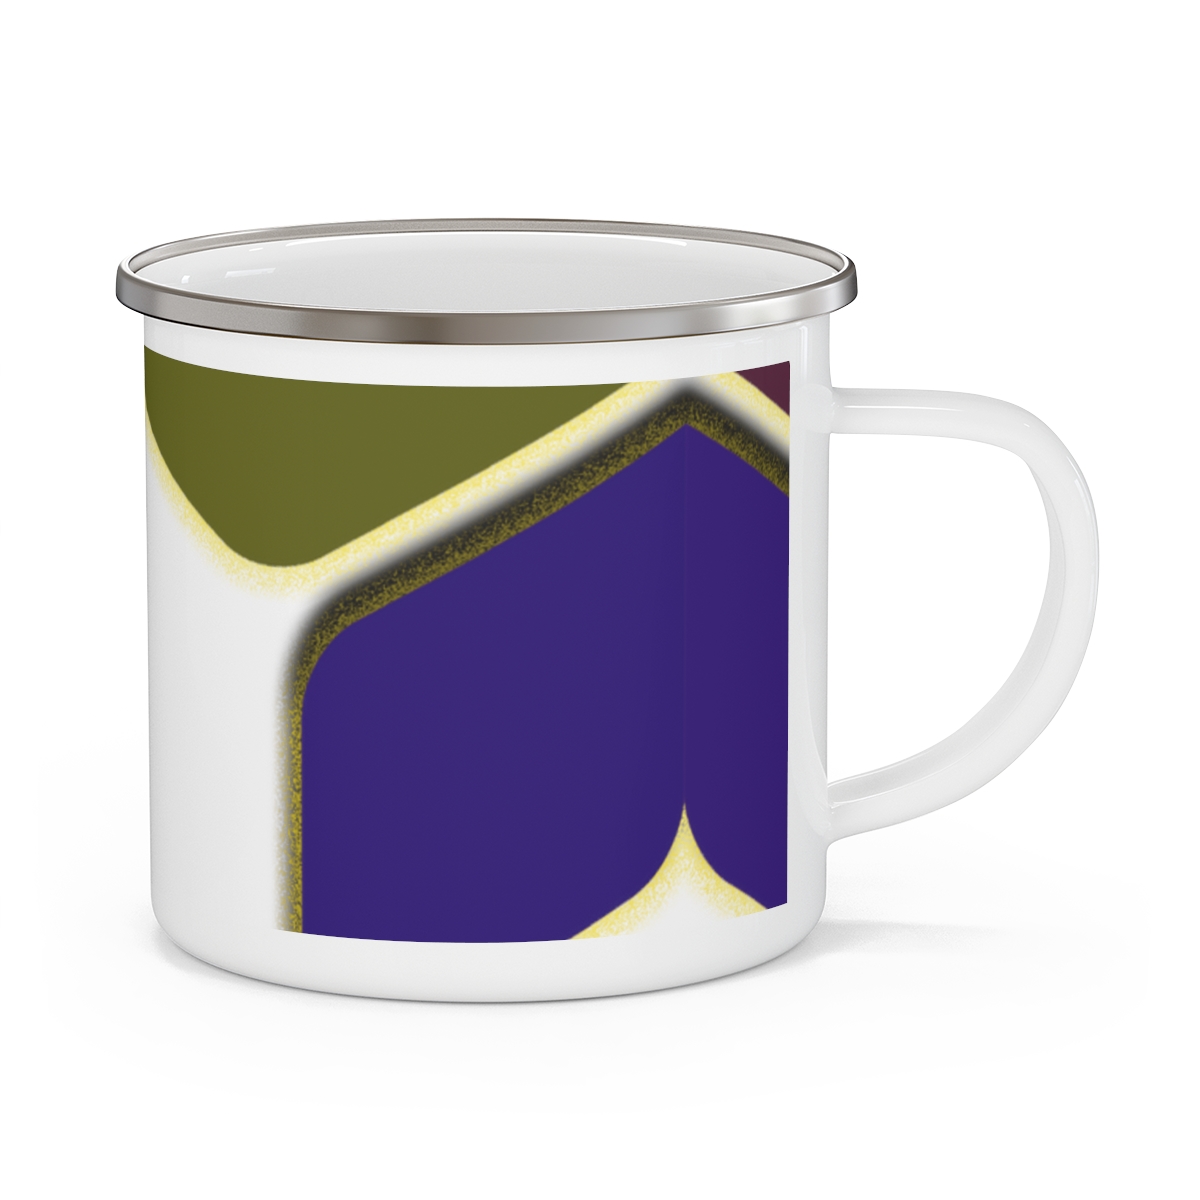 Fill My Cup Mug product thumbnail image